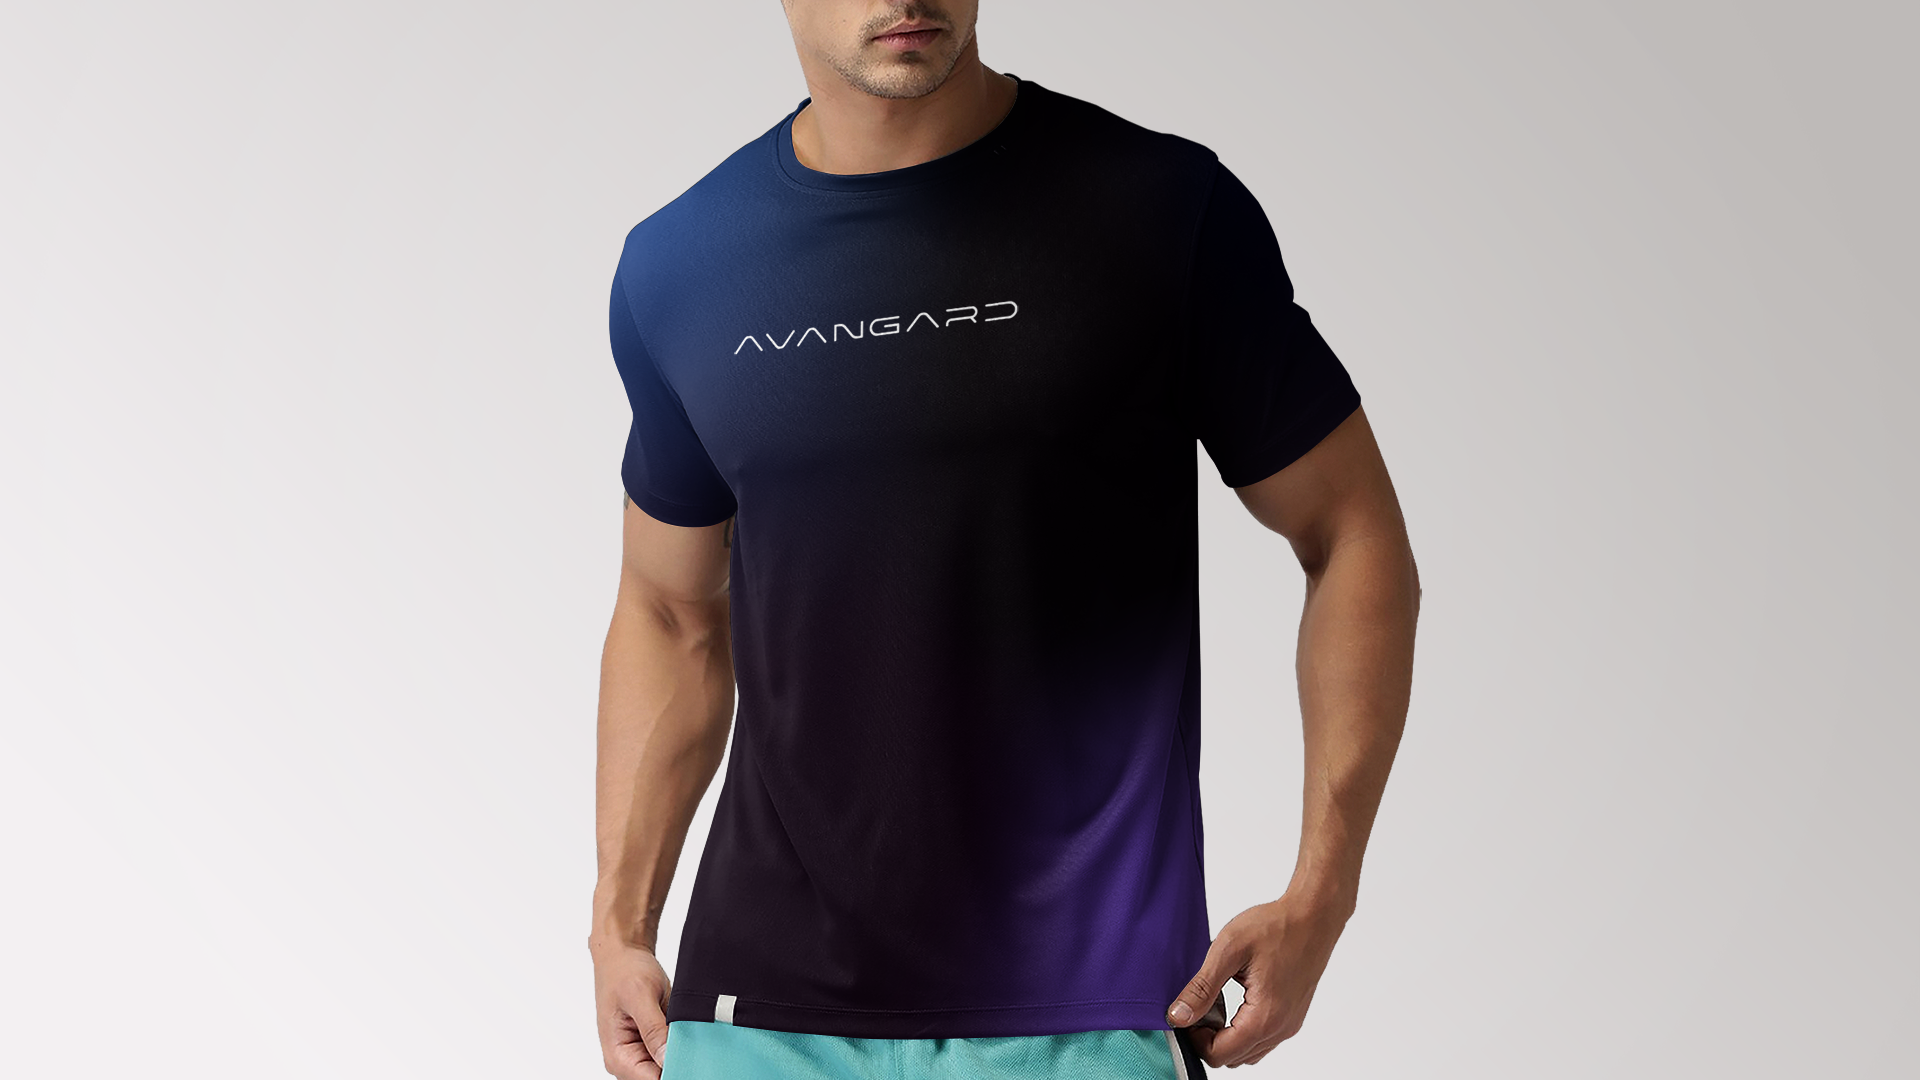 14924 - KMK - Campanha Avangard - Camisetas - Simulação.png